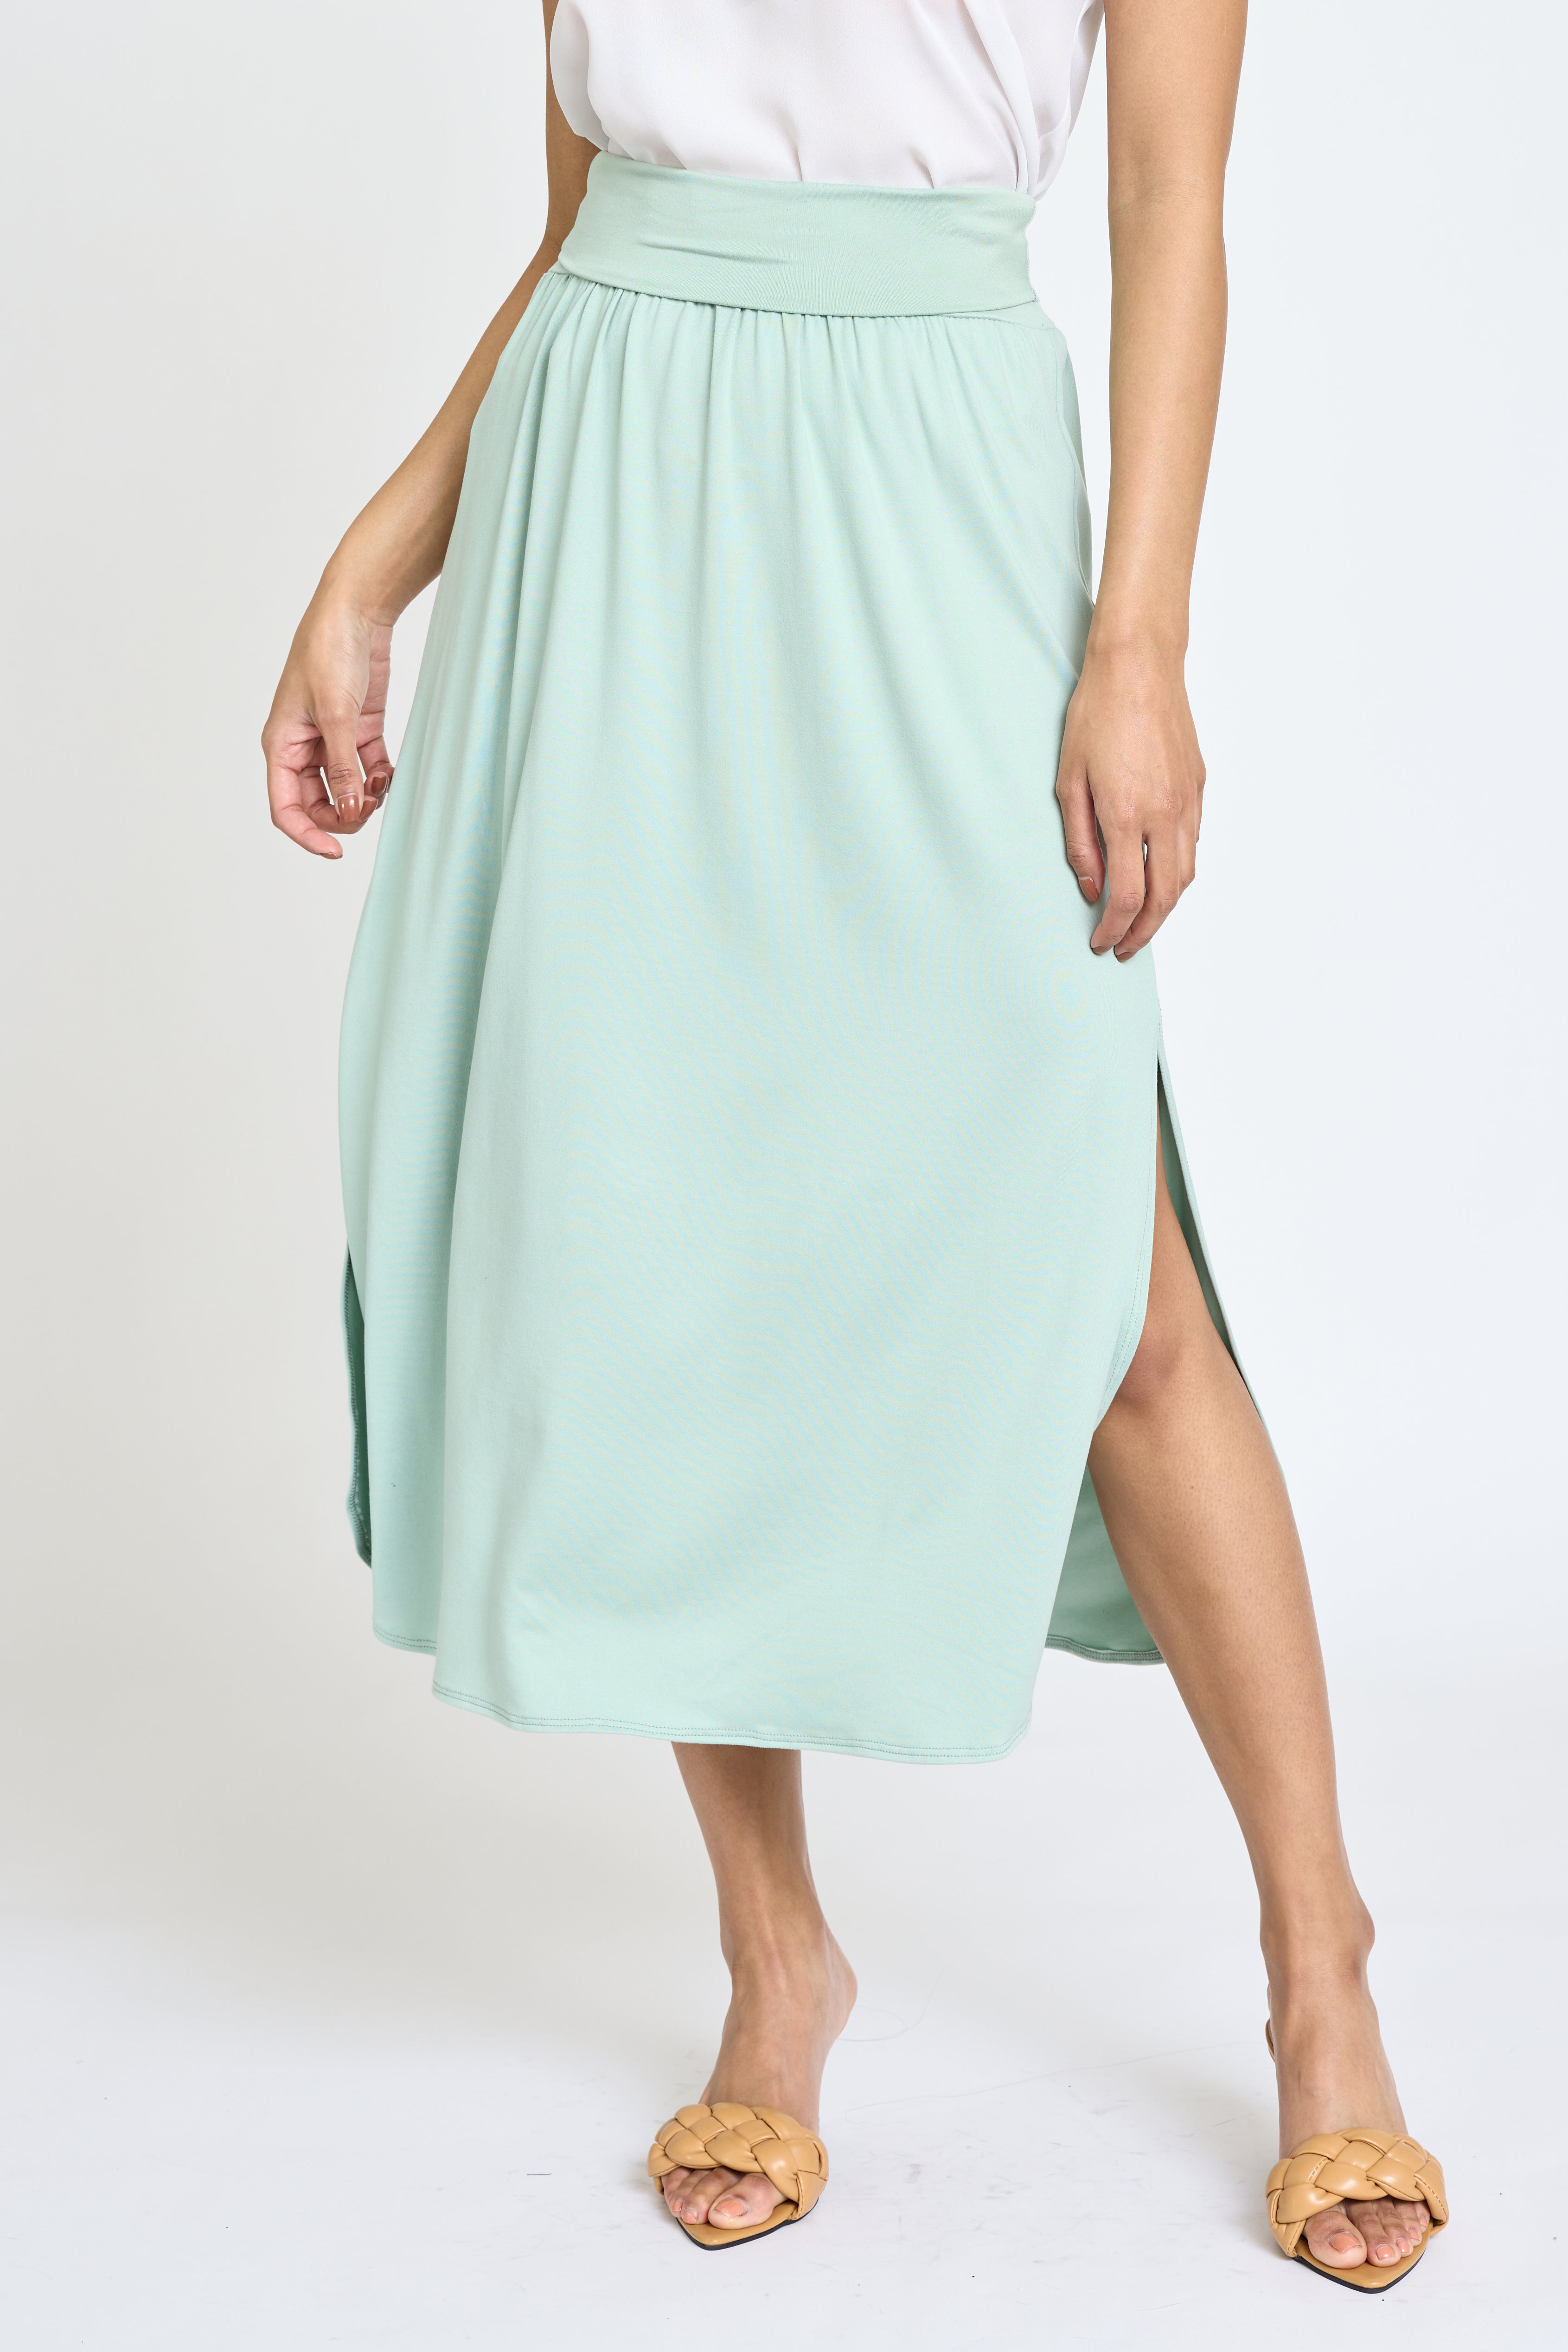 ASOS DESIGN fold over waist pleated skirt in gray | ASOS